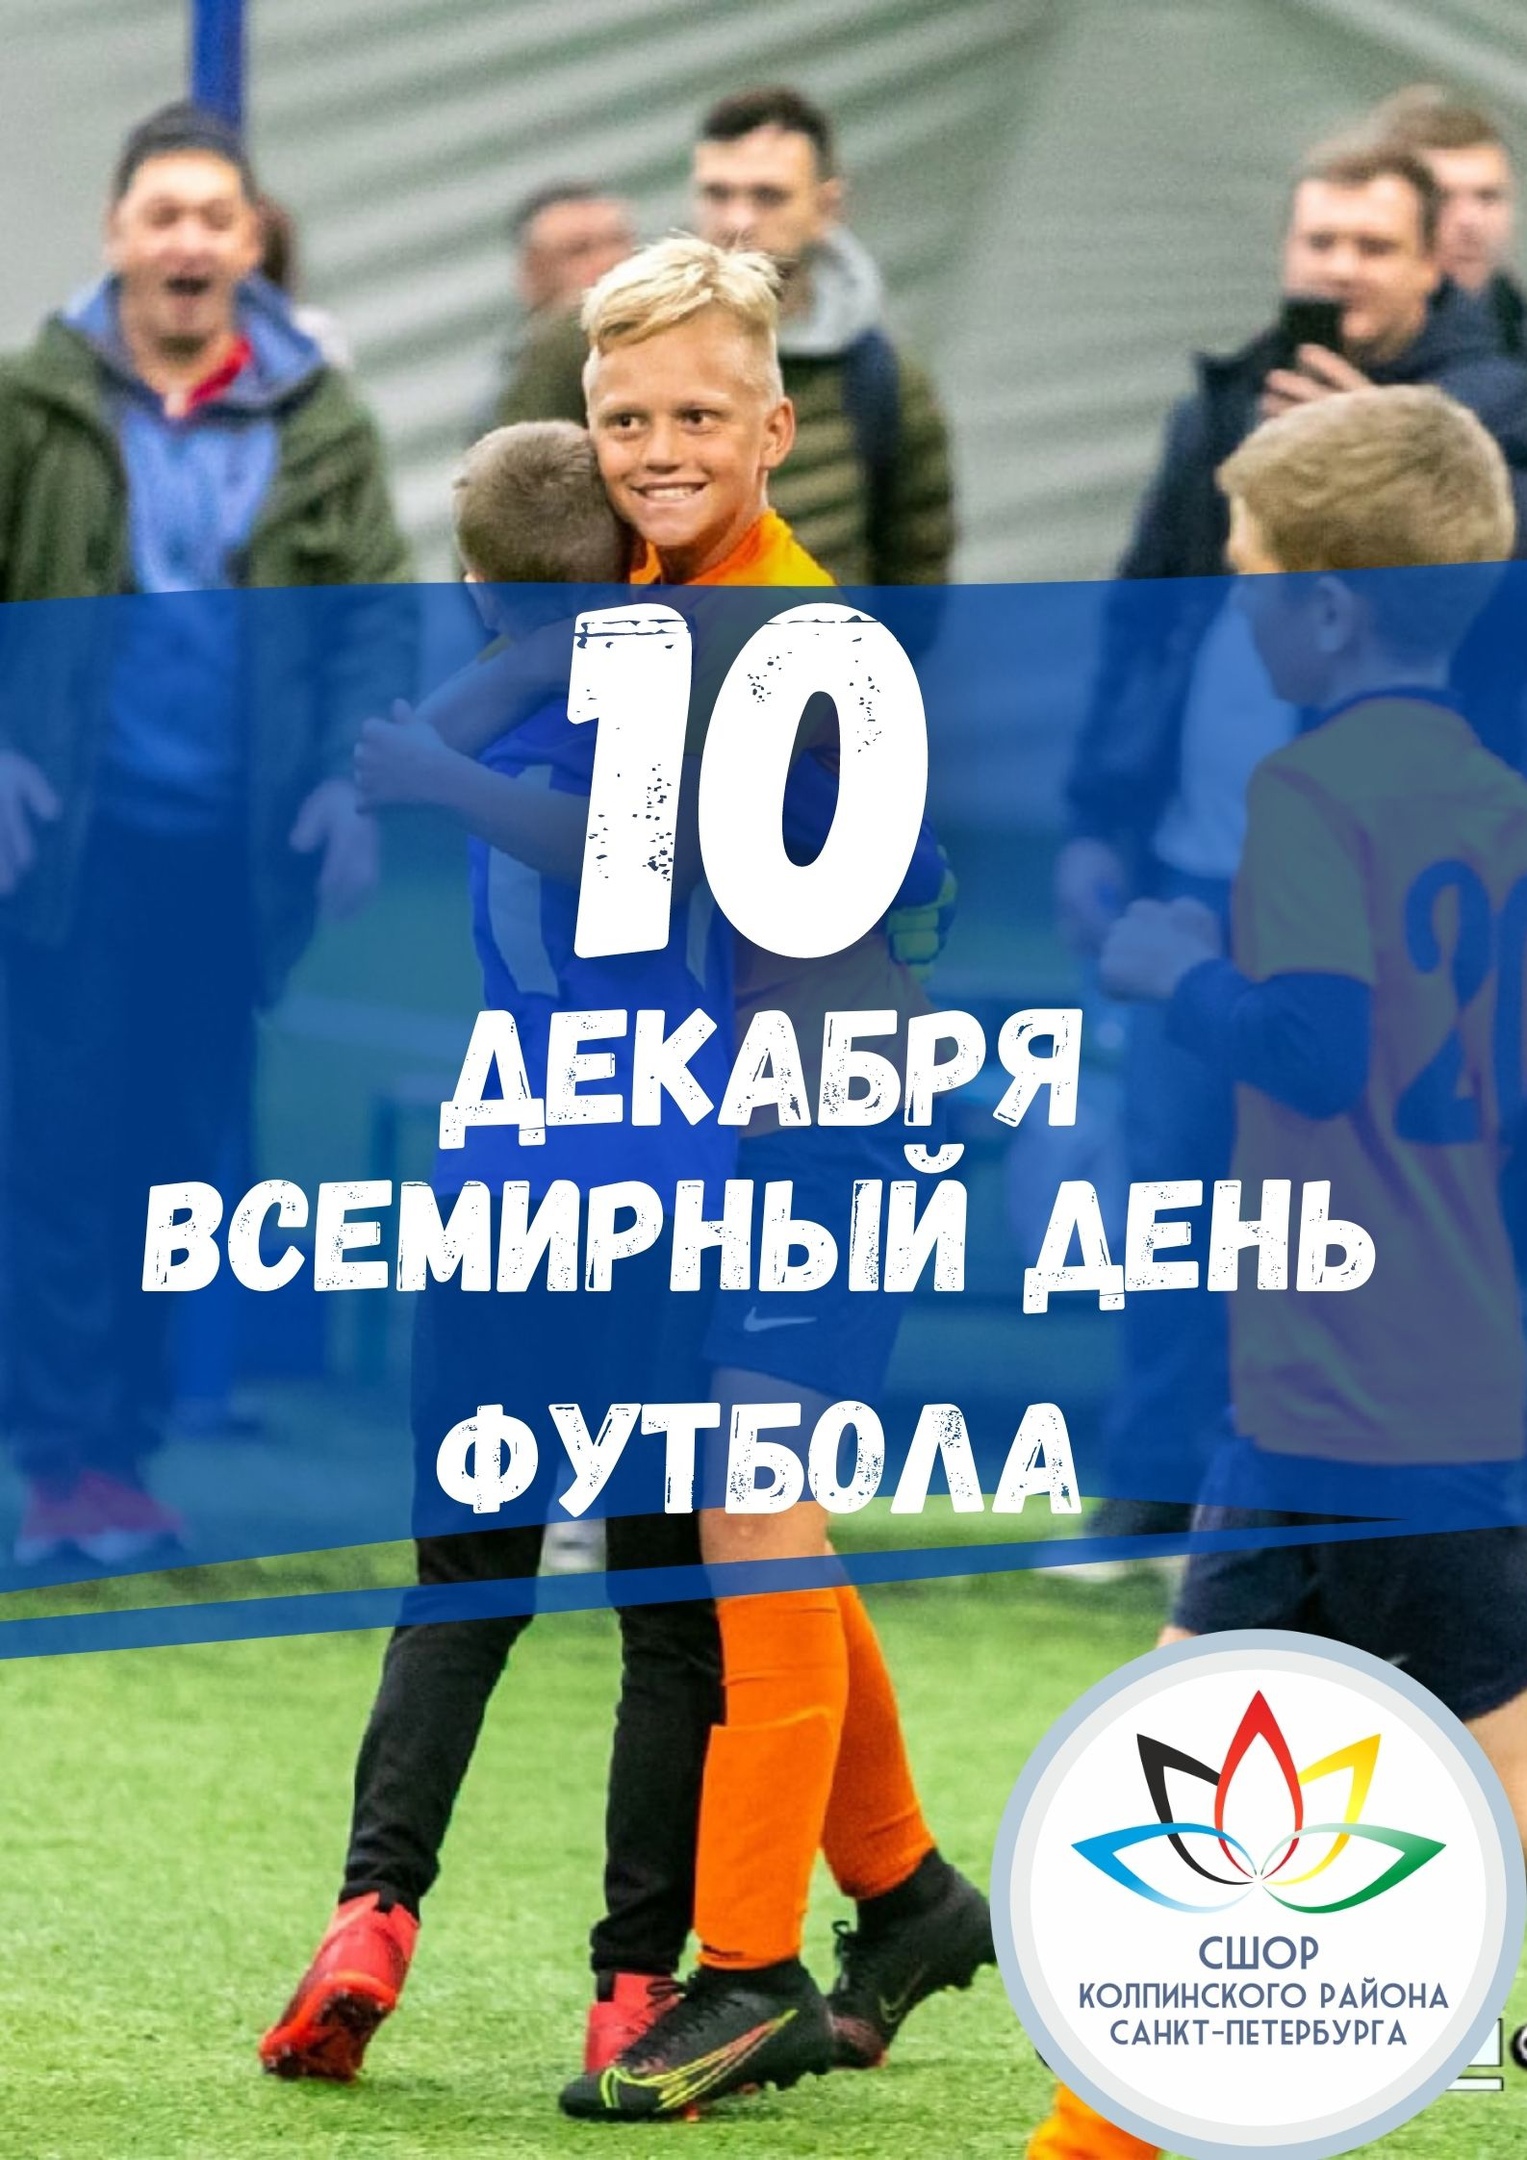 ⚽В России футбол - общенациональное увлечение, спорт номер один⚽